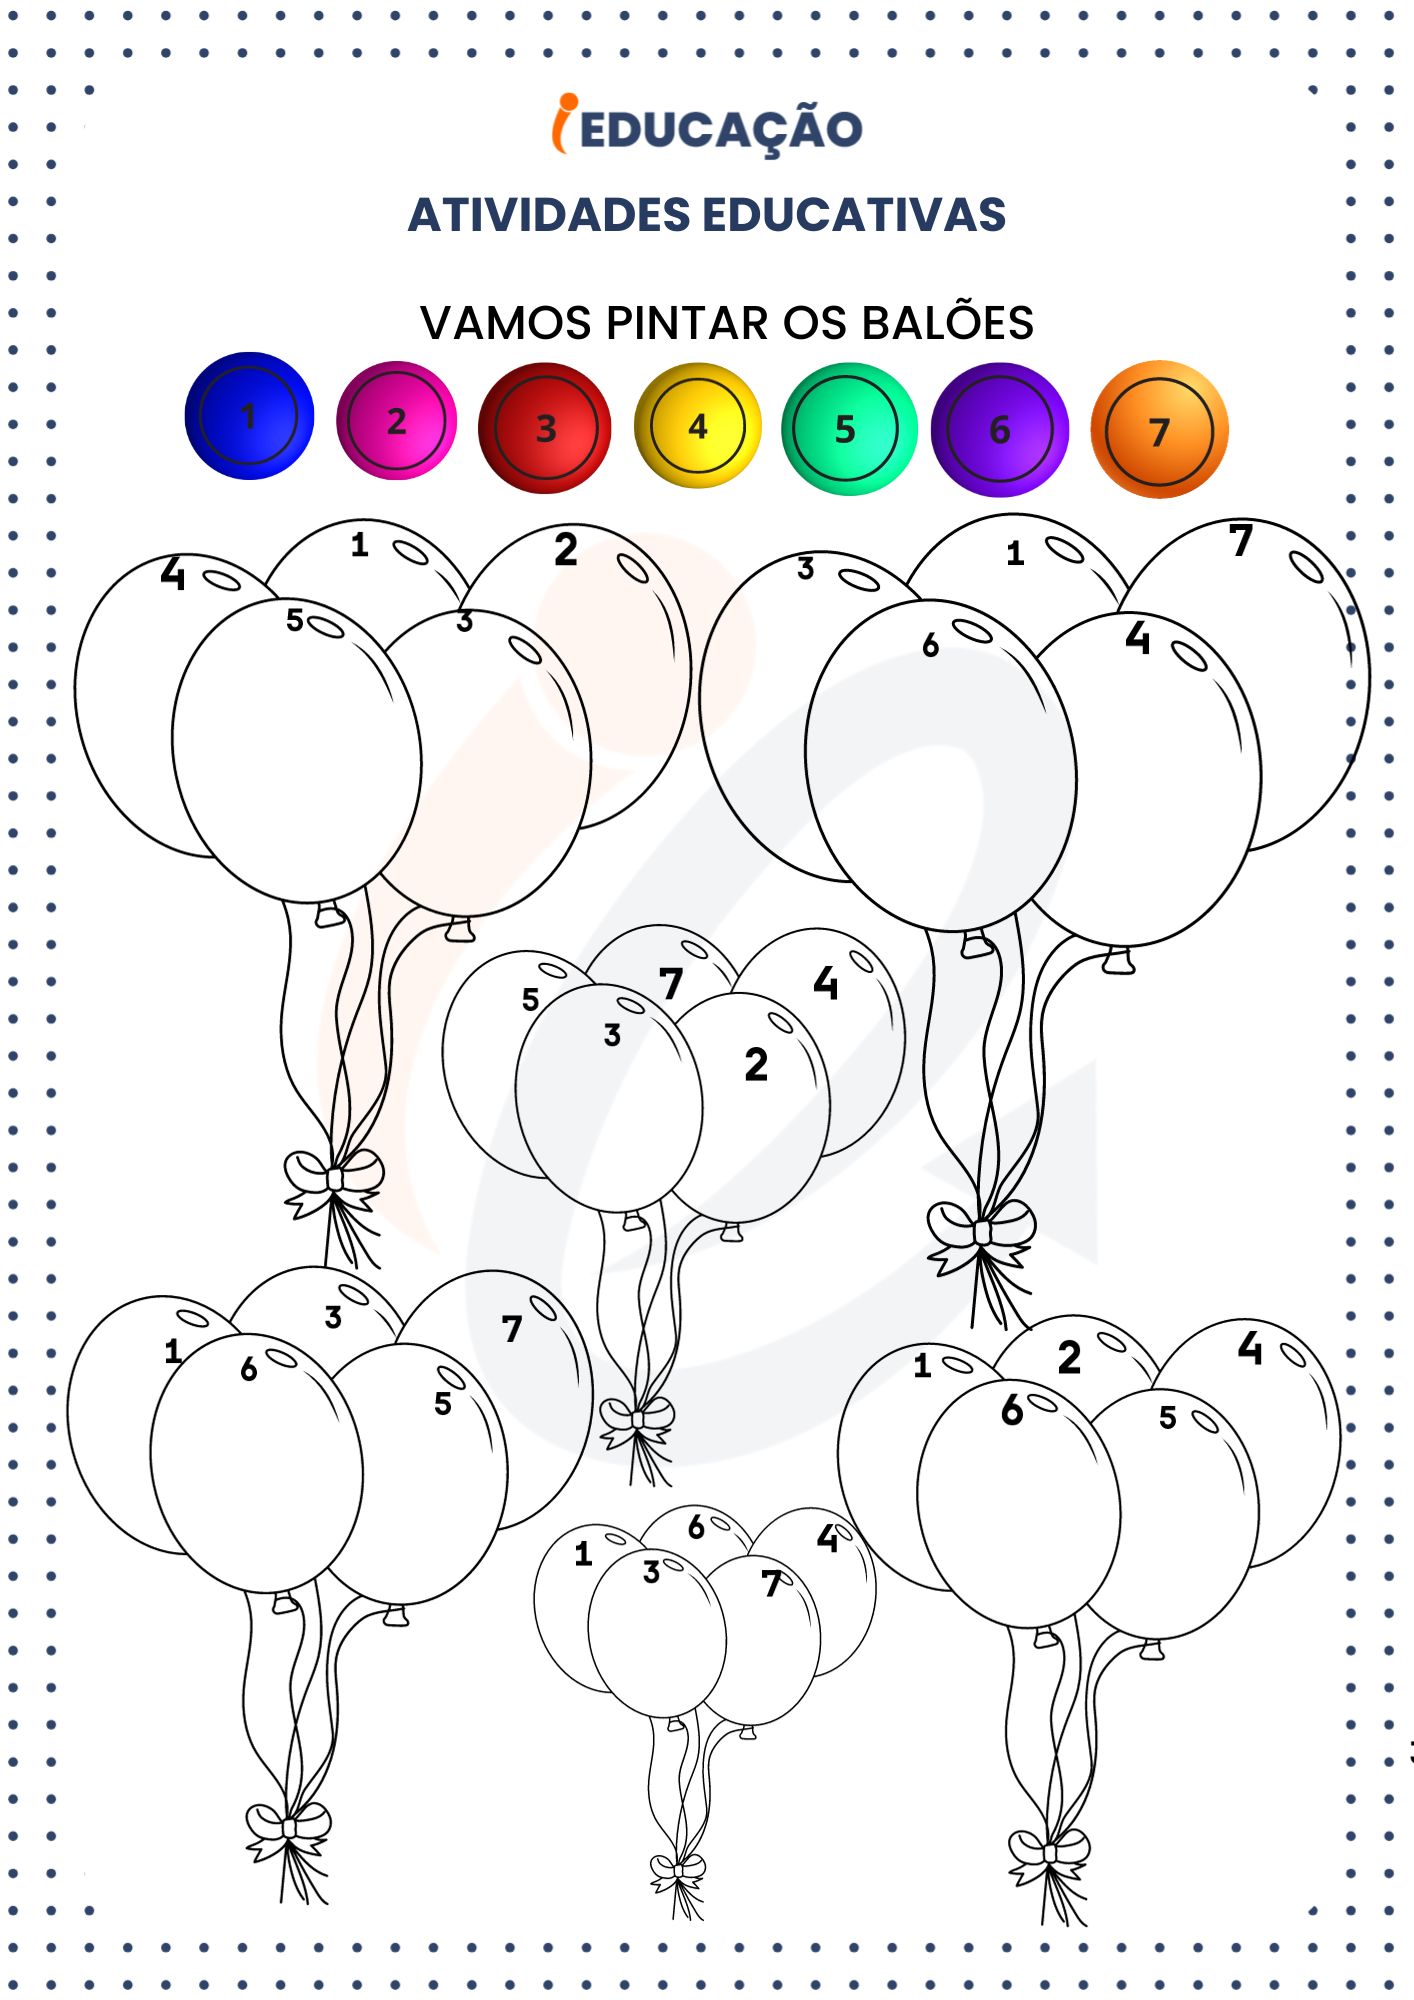 Atividades Educativas_ Vamos pintar os Balões